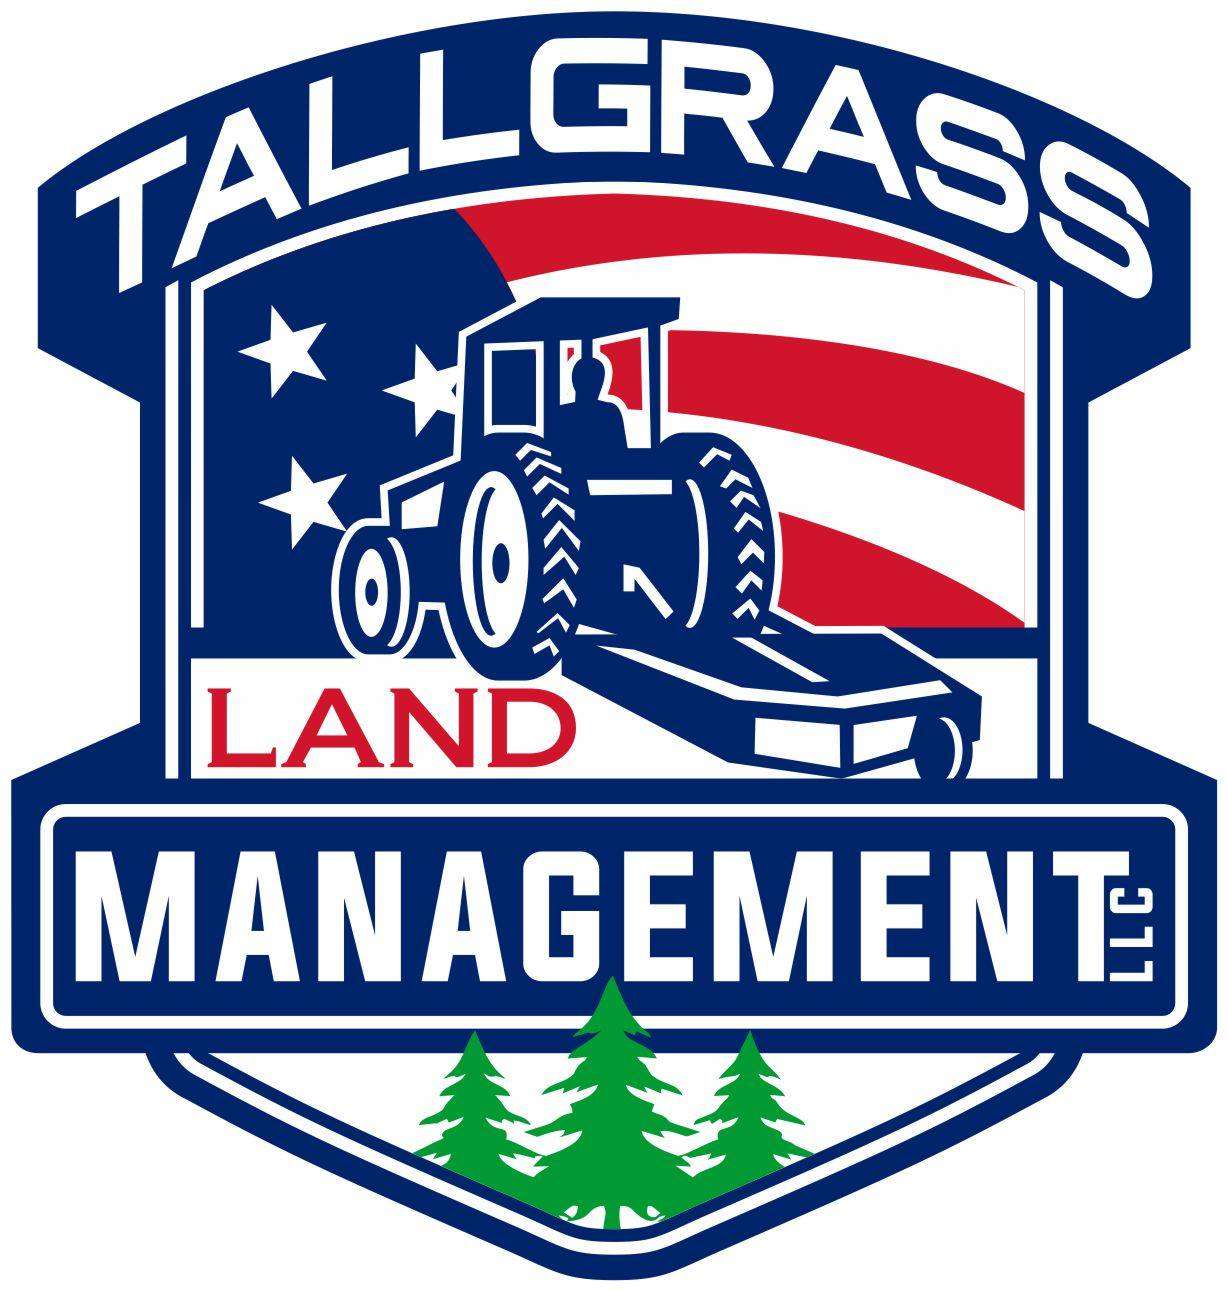 Tallgrass Land Management, LLC Logo